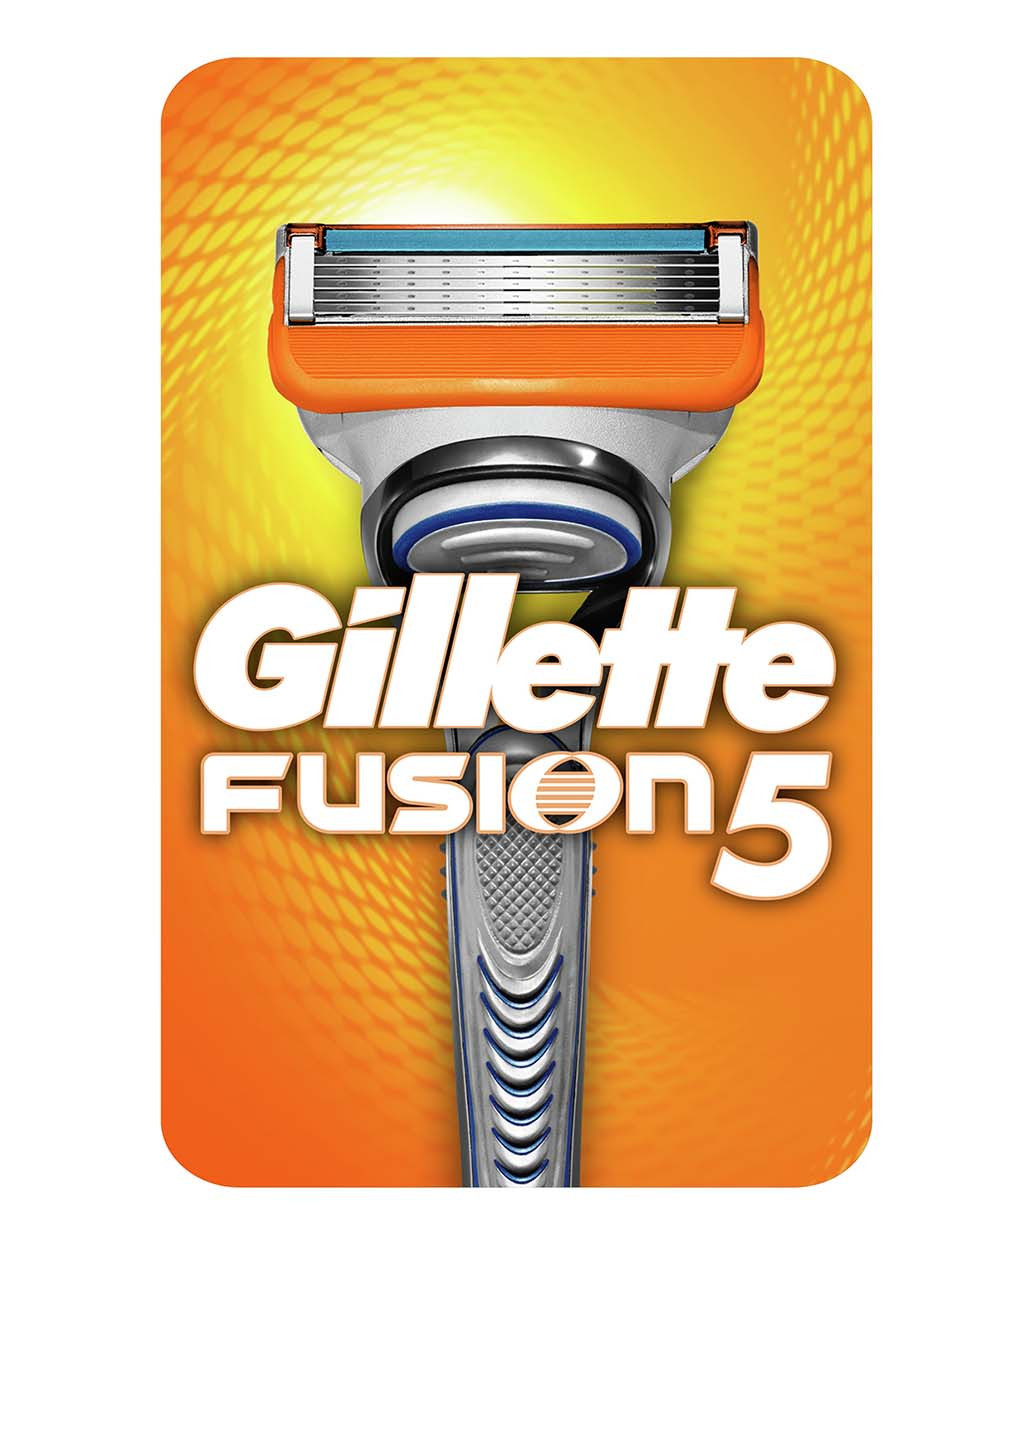 Станок для бритья Fusion5 с сменным картриджем Gillette (14516737)